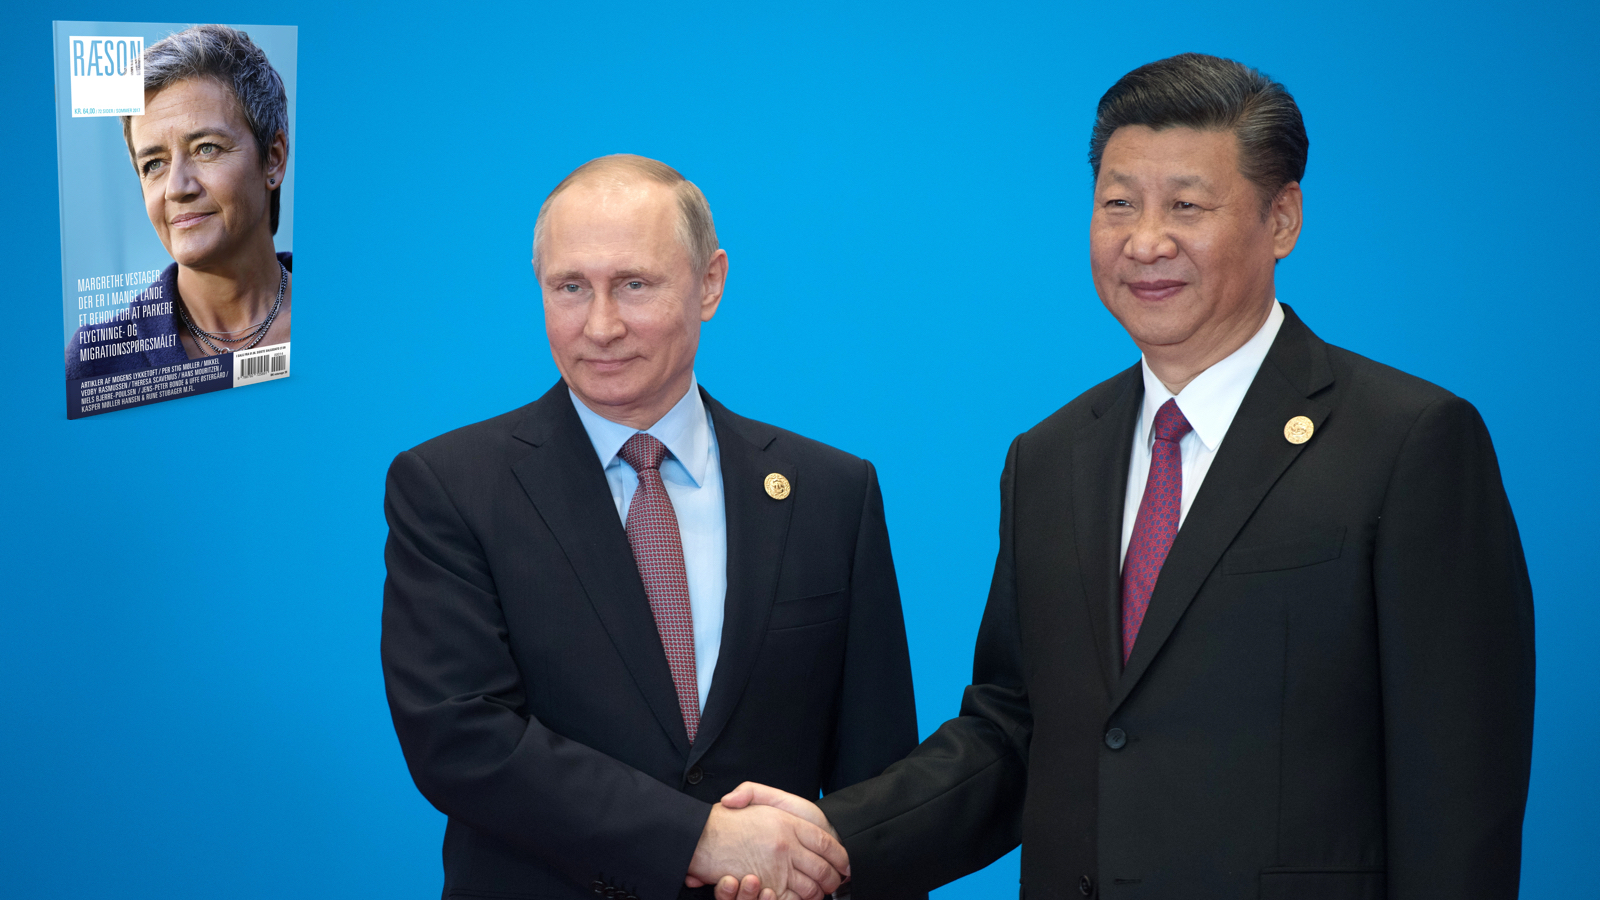 Hans Mouritzen: Sådan er vilkårene for verdens småstater under Trump, Putin og Xi